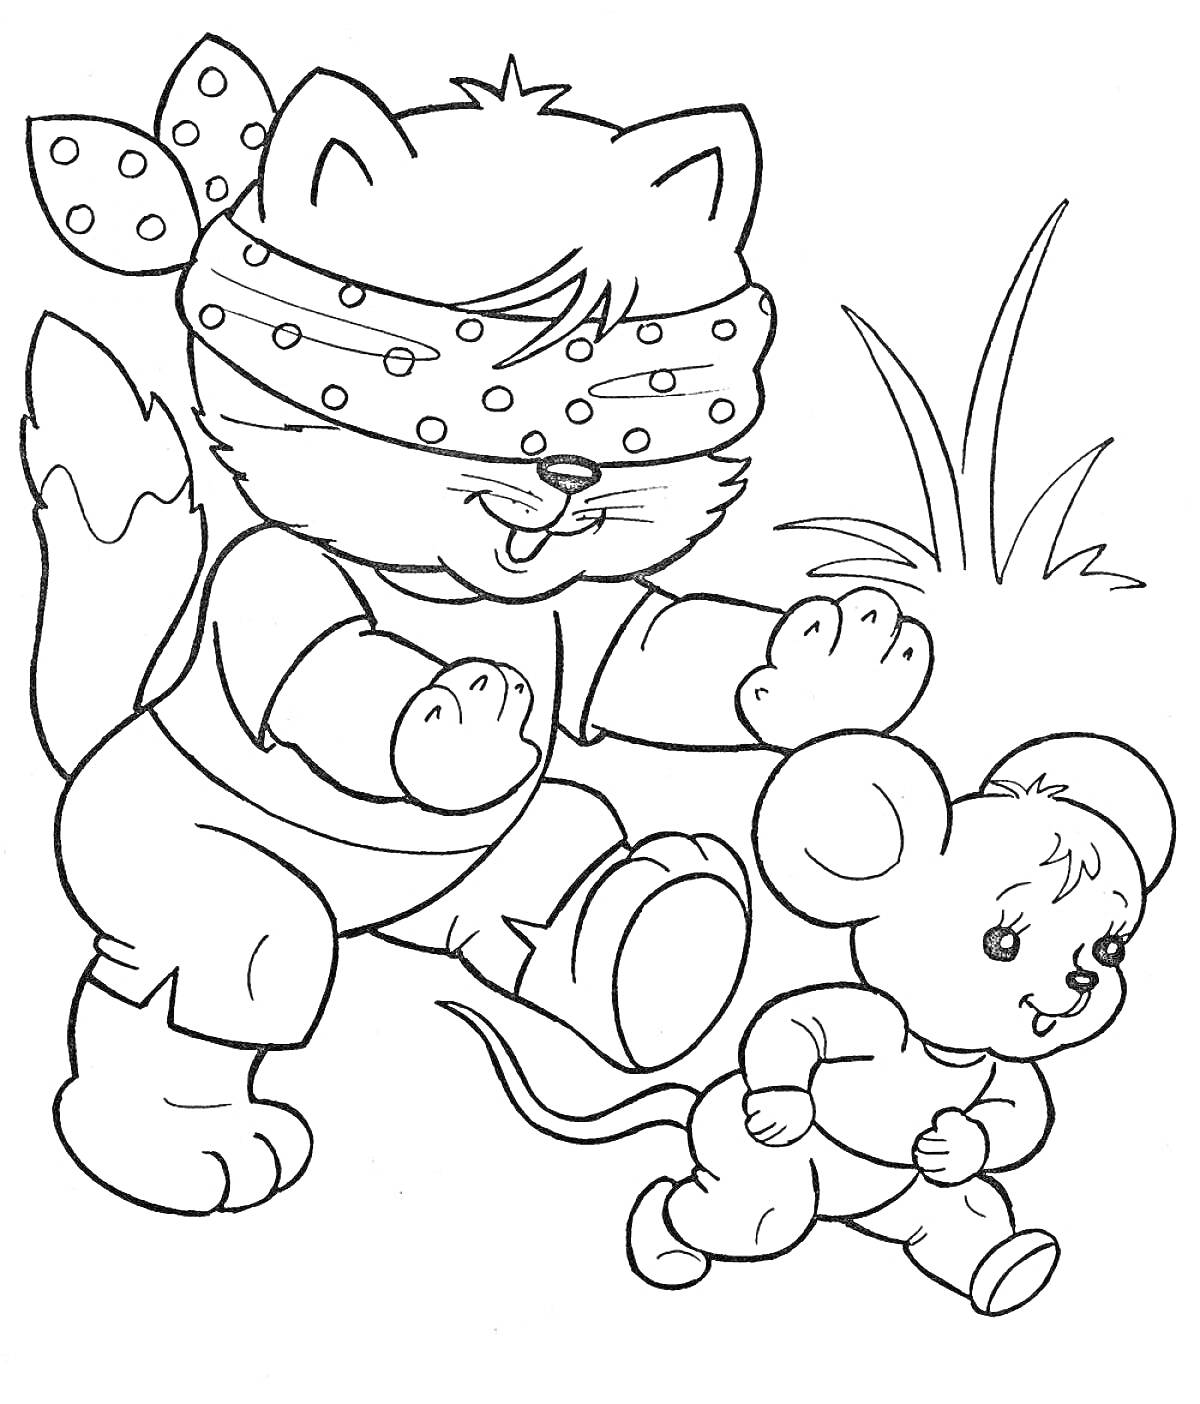 Раскраска Кошка с повязкой на глазах и мышонок играют рядом с травой